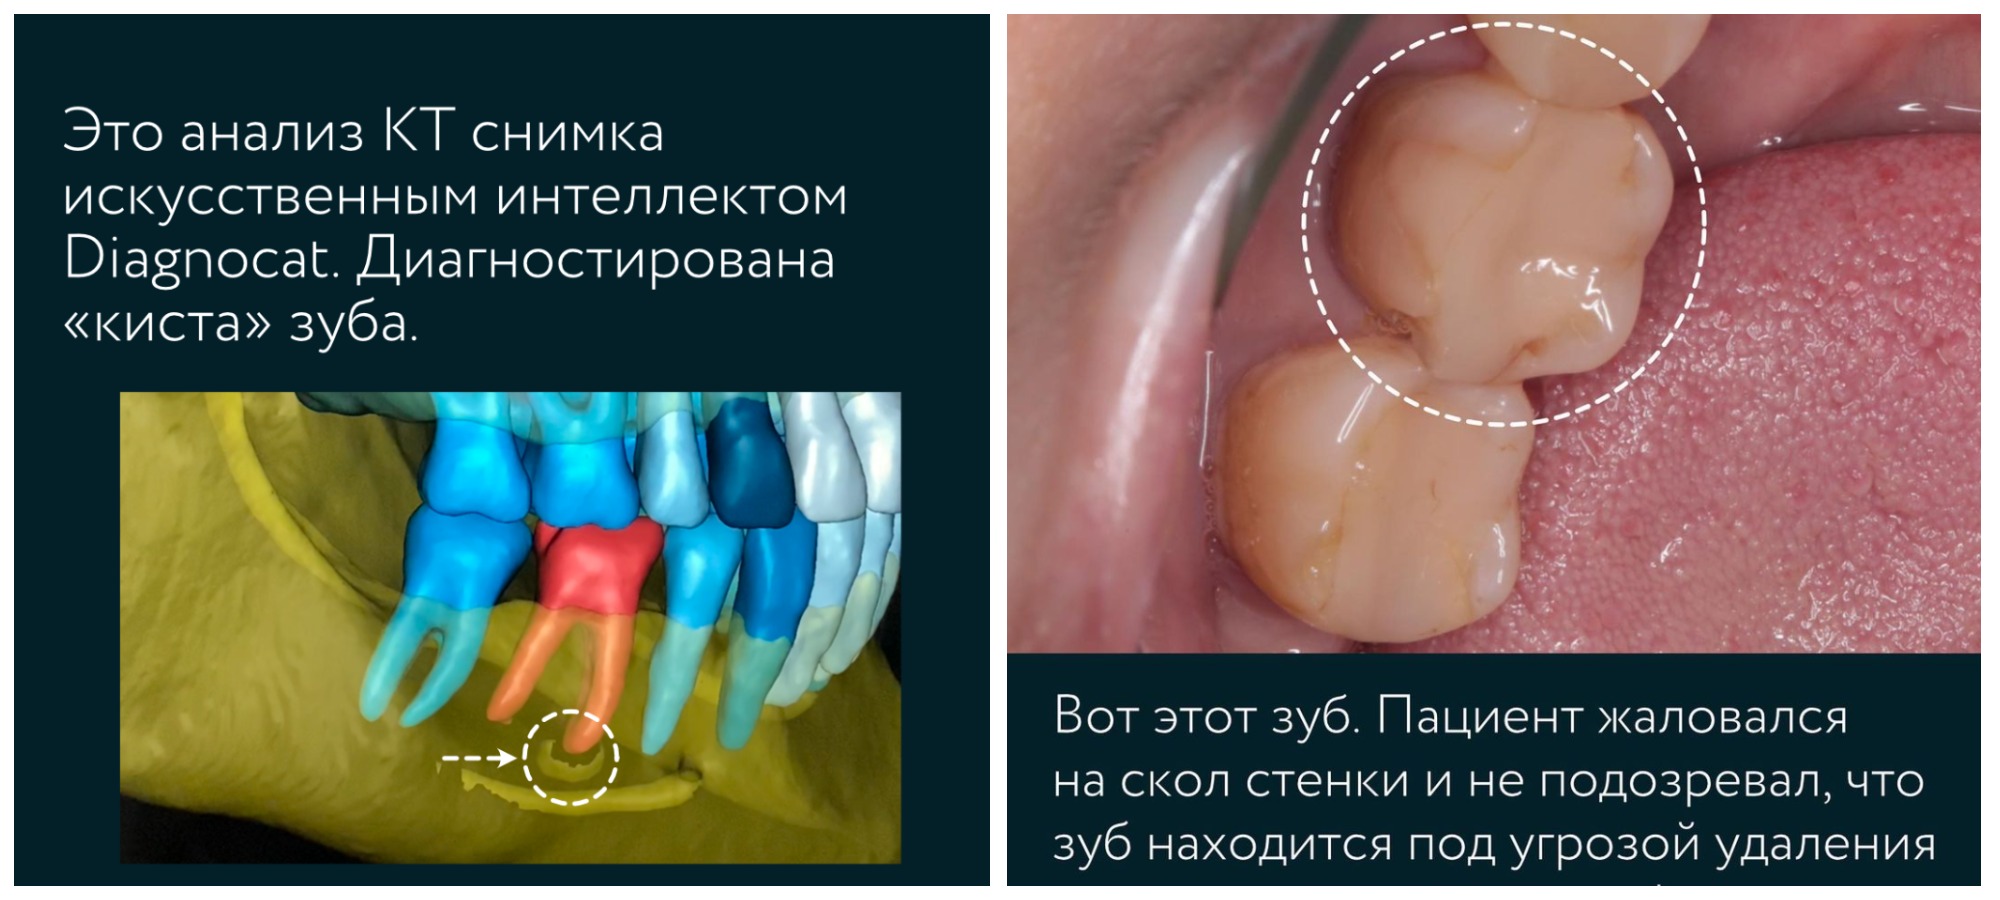 Удаление кисты без удаления зуба — хирургические методы